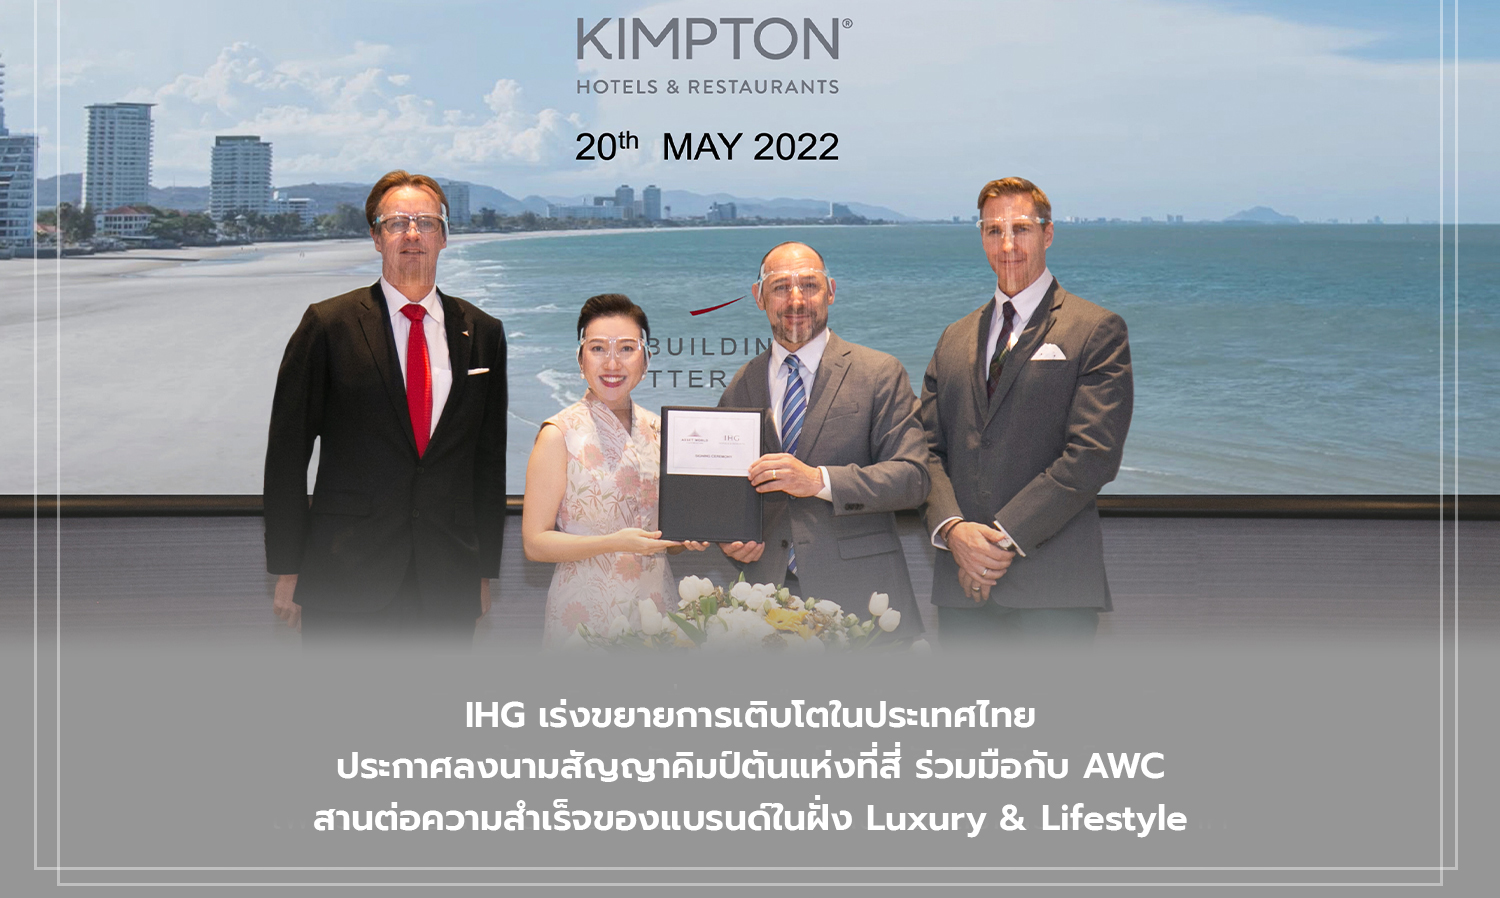 IHG เร่งขยายการเติบโตในประเทศไทย ประกาศลงนามสัญญาคิมป์ตันแห่งที่สี่ ร่วมมือกับ AWC สานต่อความสำเร็จของแบรนด์ในฝั่ง Luxury & Lifestyle